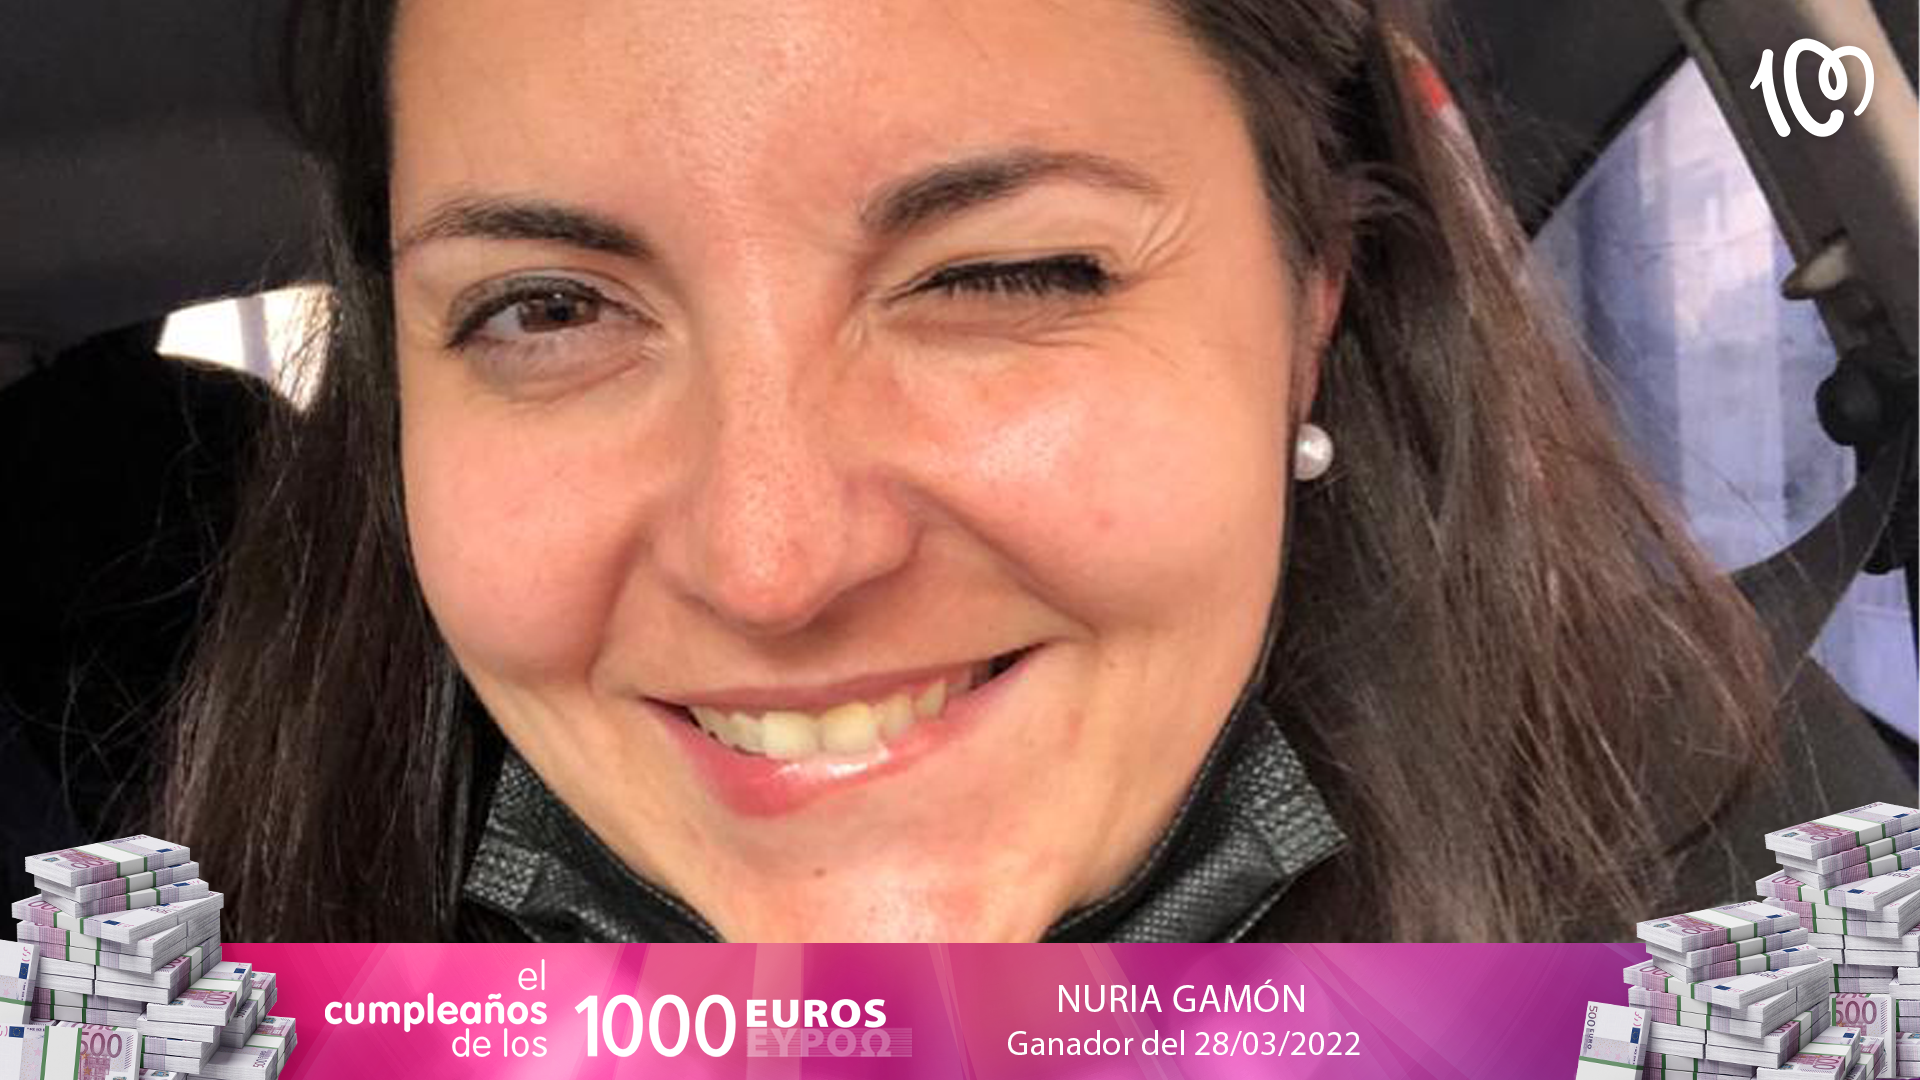 Nuria gana 2.000 euros con tan solo una llamada: "¡Es increíble!"